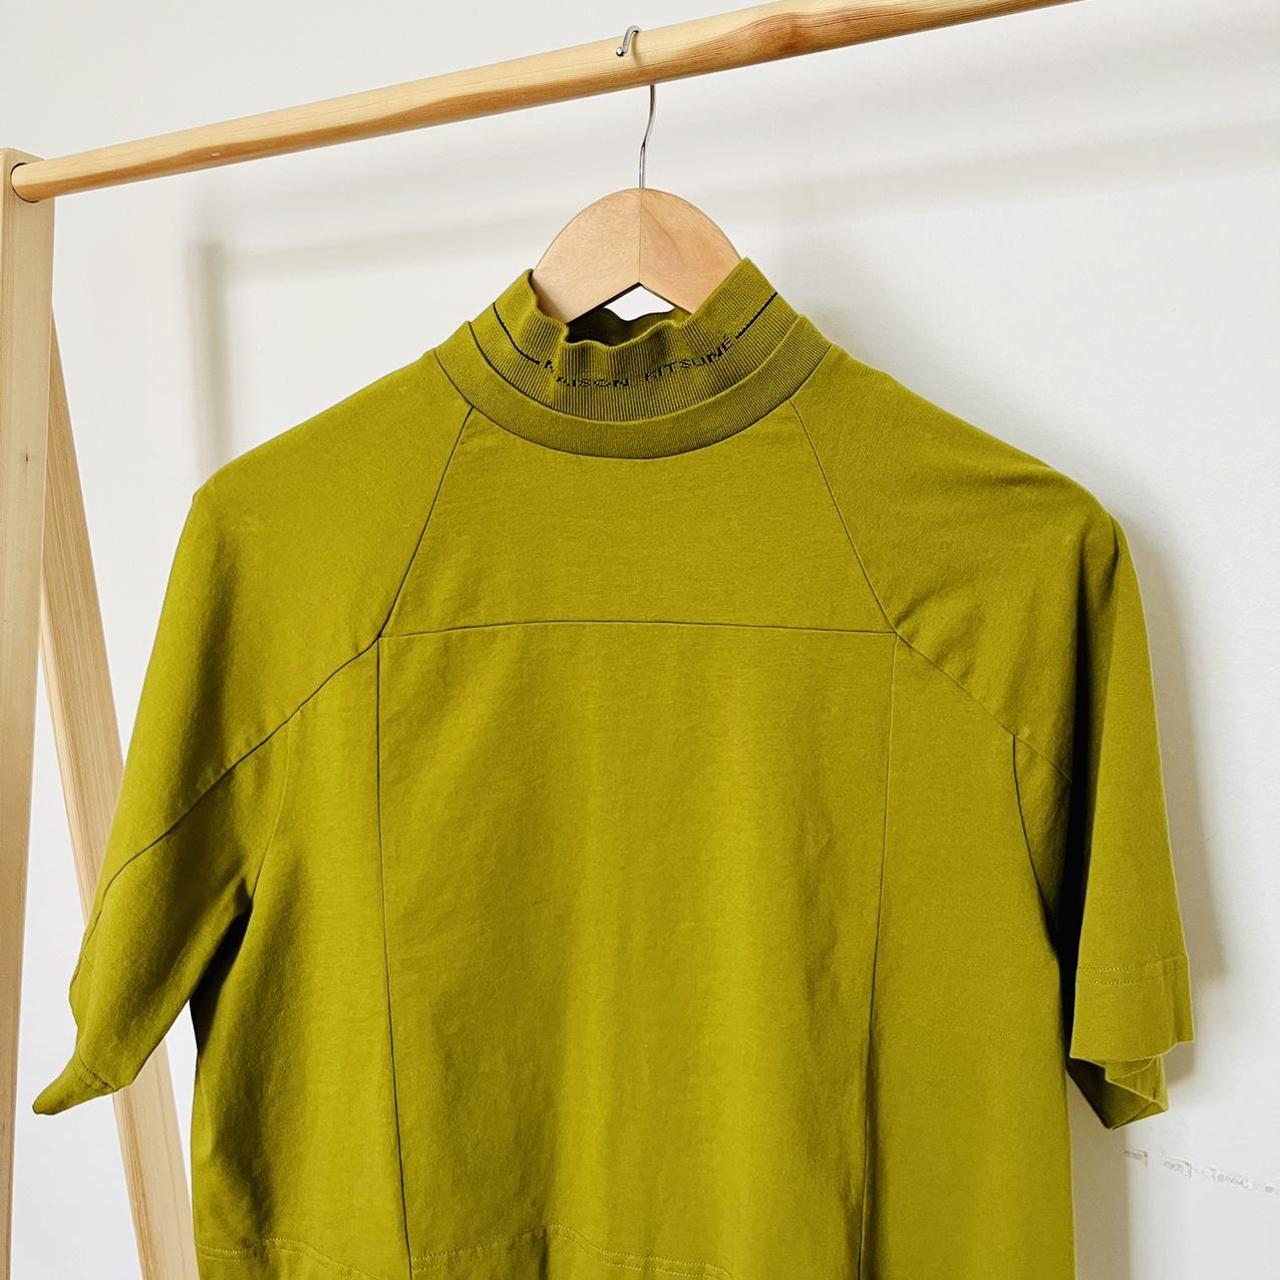 Maison Kitsuné Women's Khaki and Green Shirt